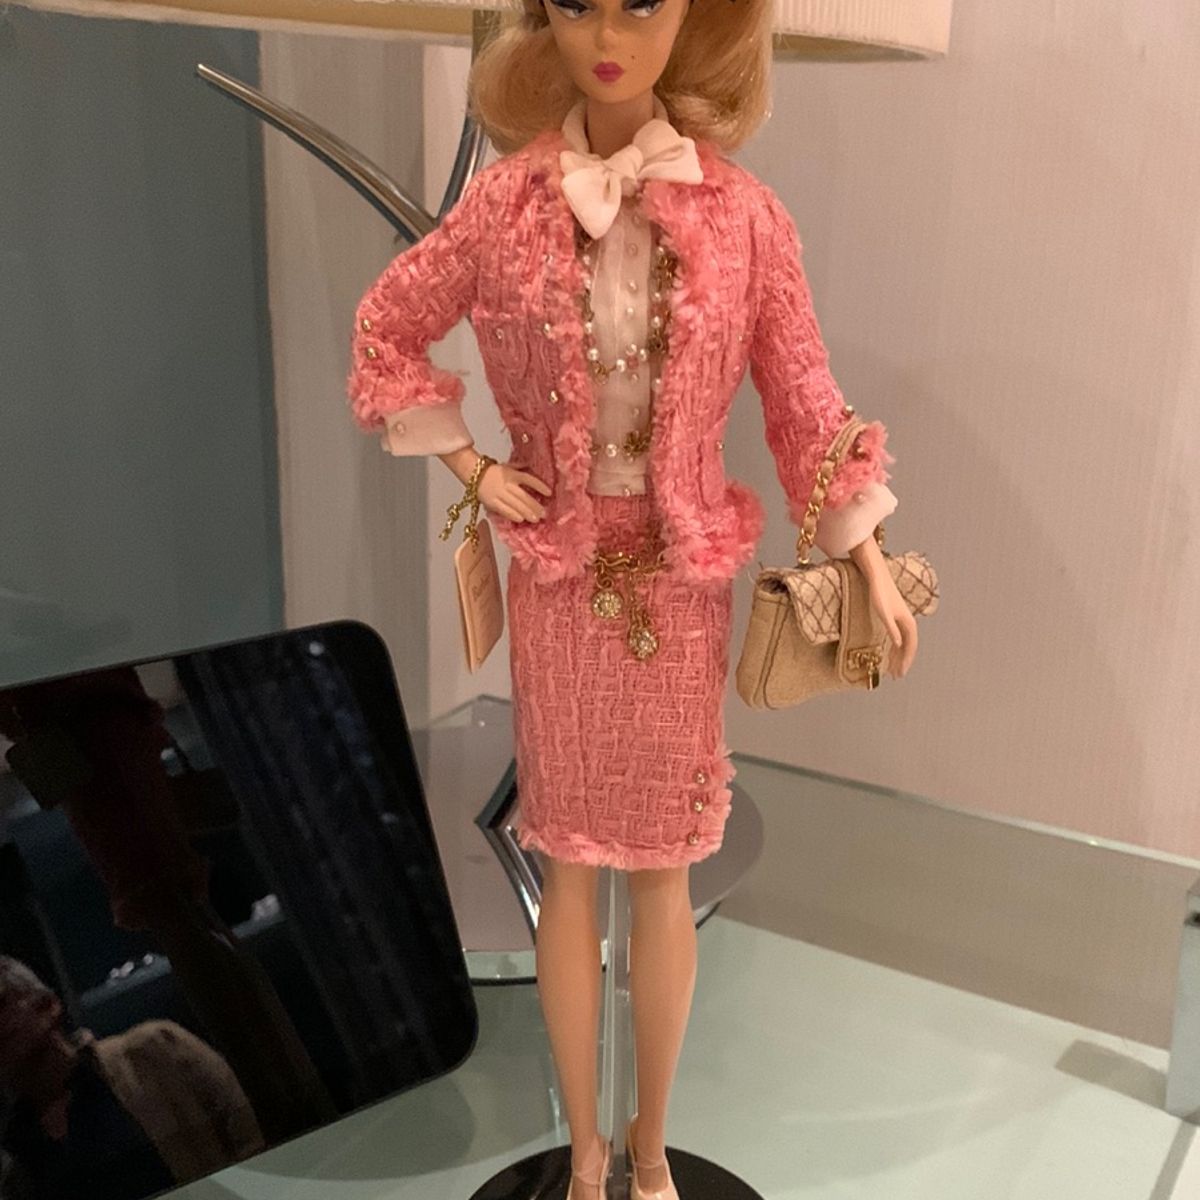 Preços baixos em Roupas de Boneca Barbie Silkstone